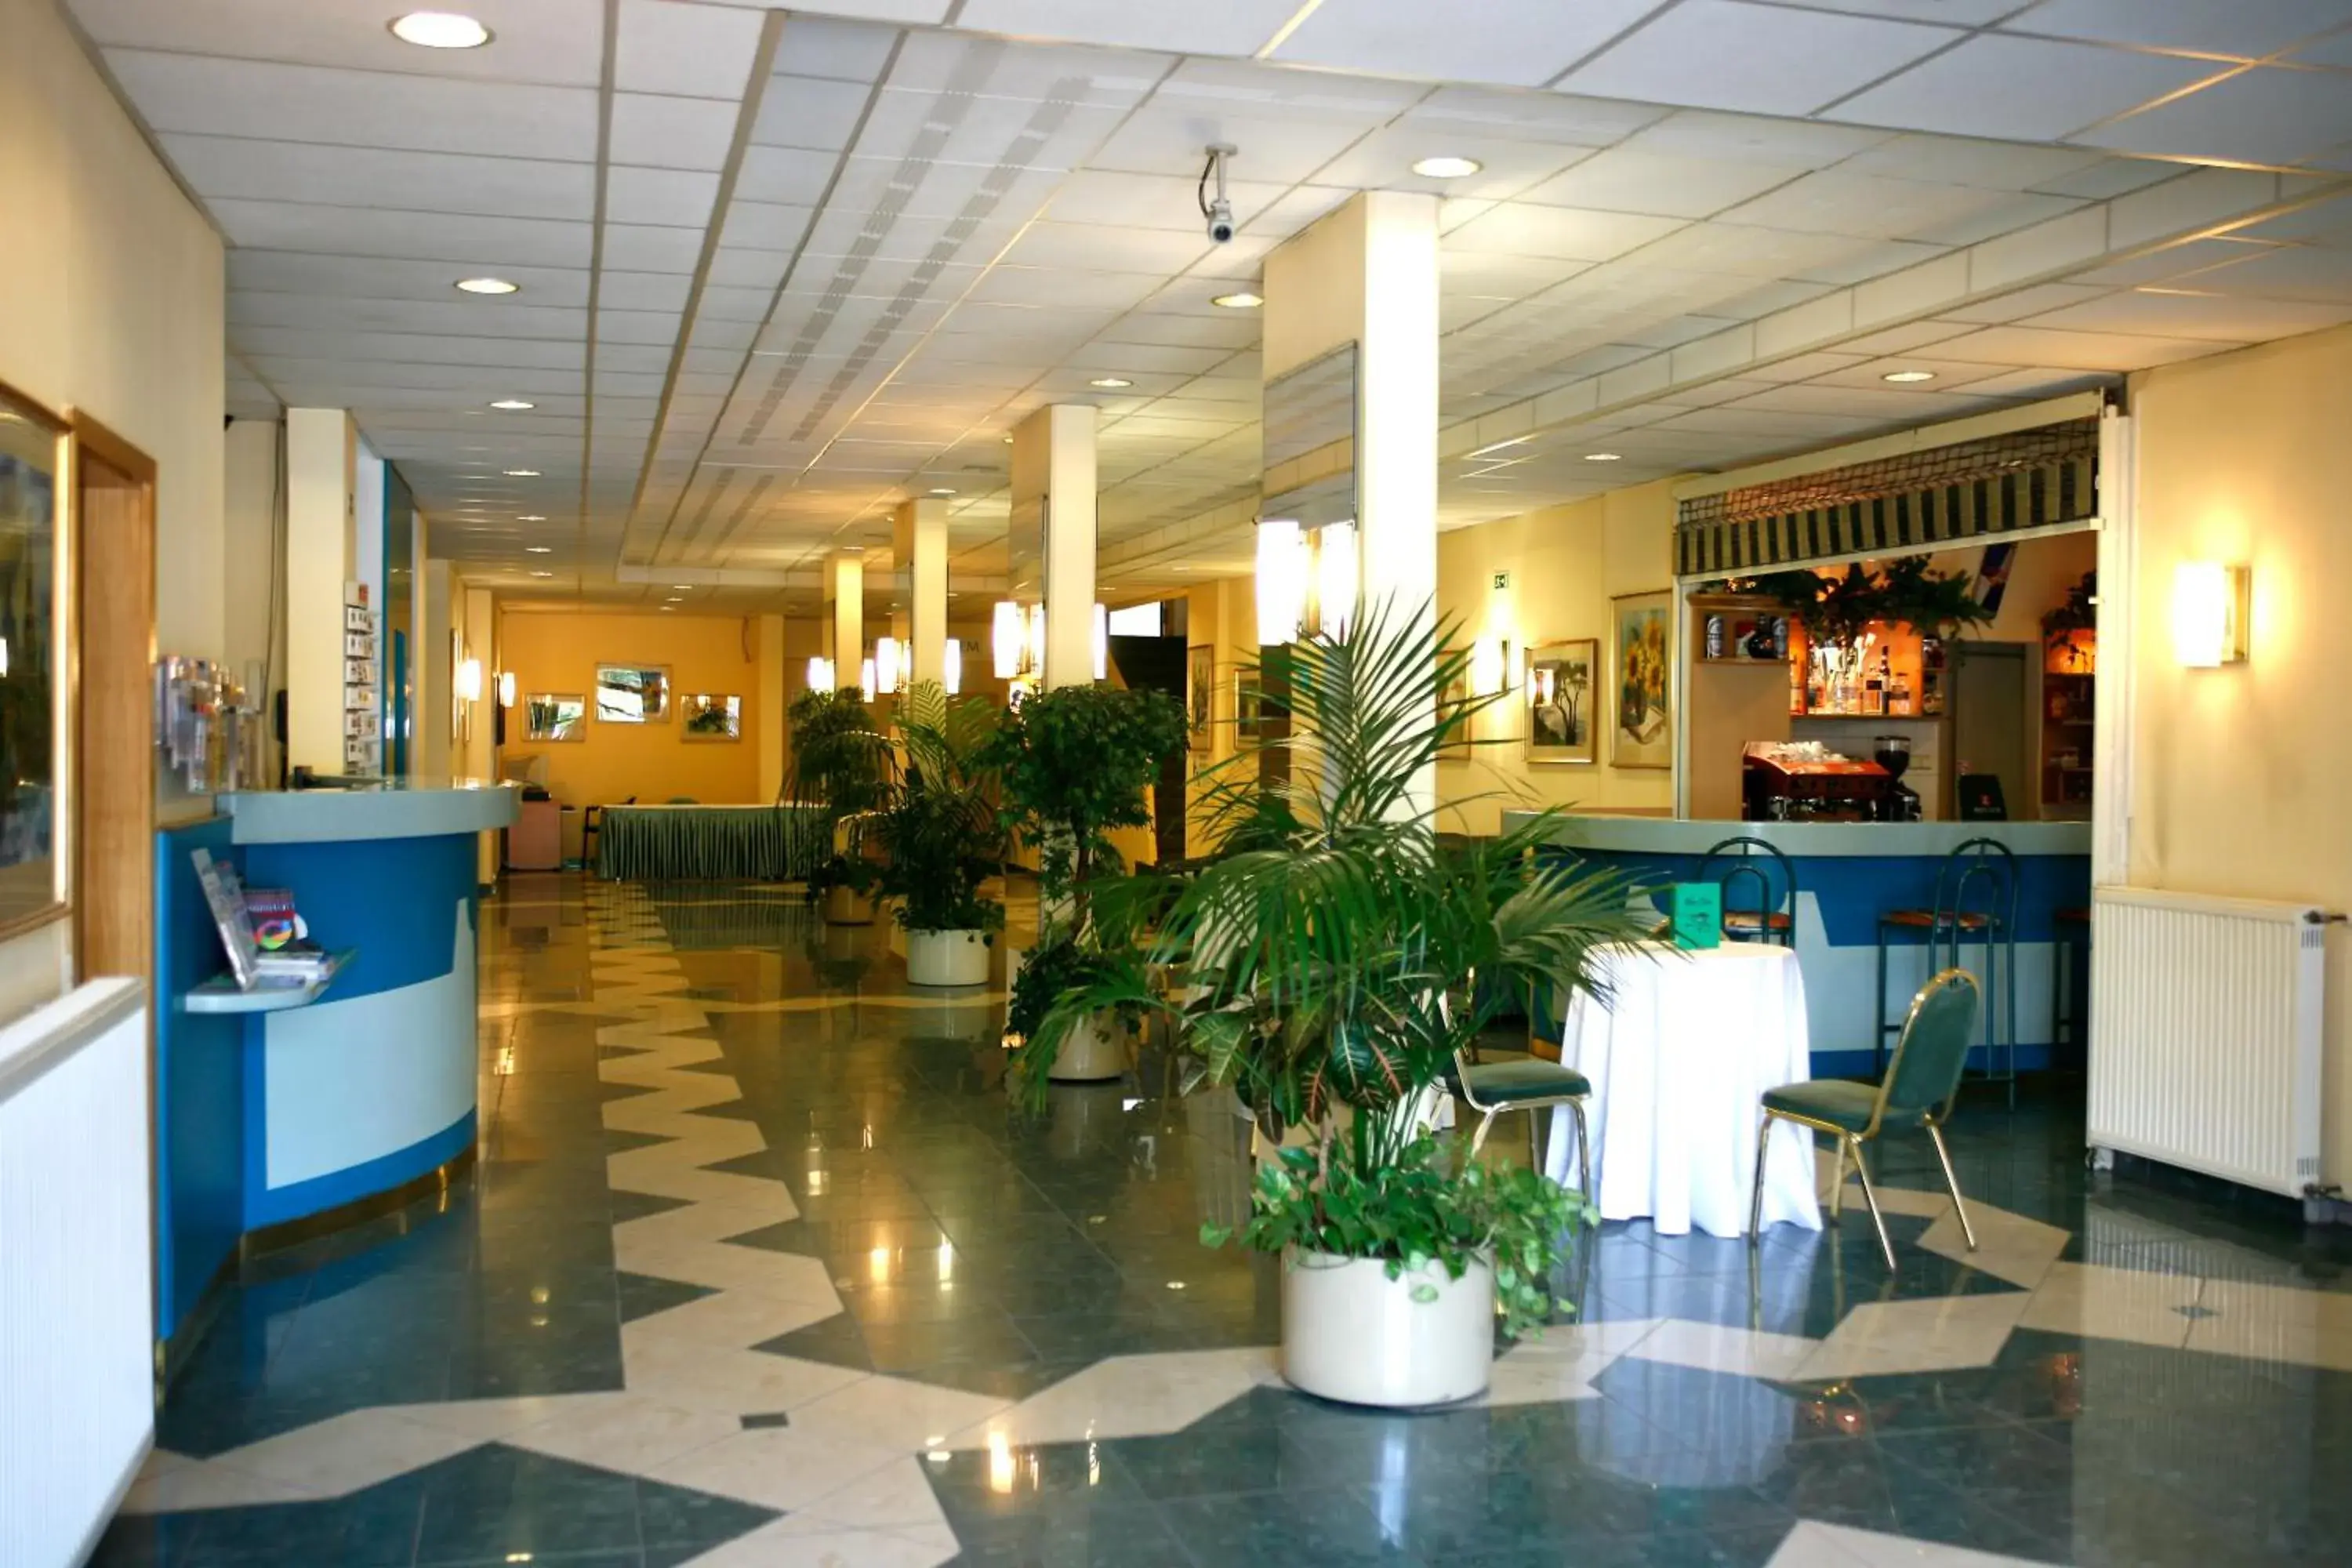 Lobby or reception in Hotel Bara